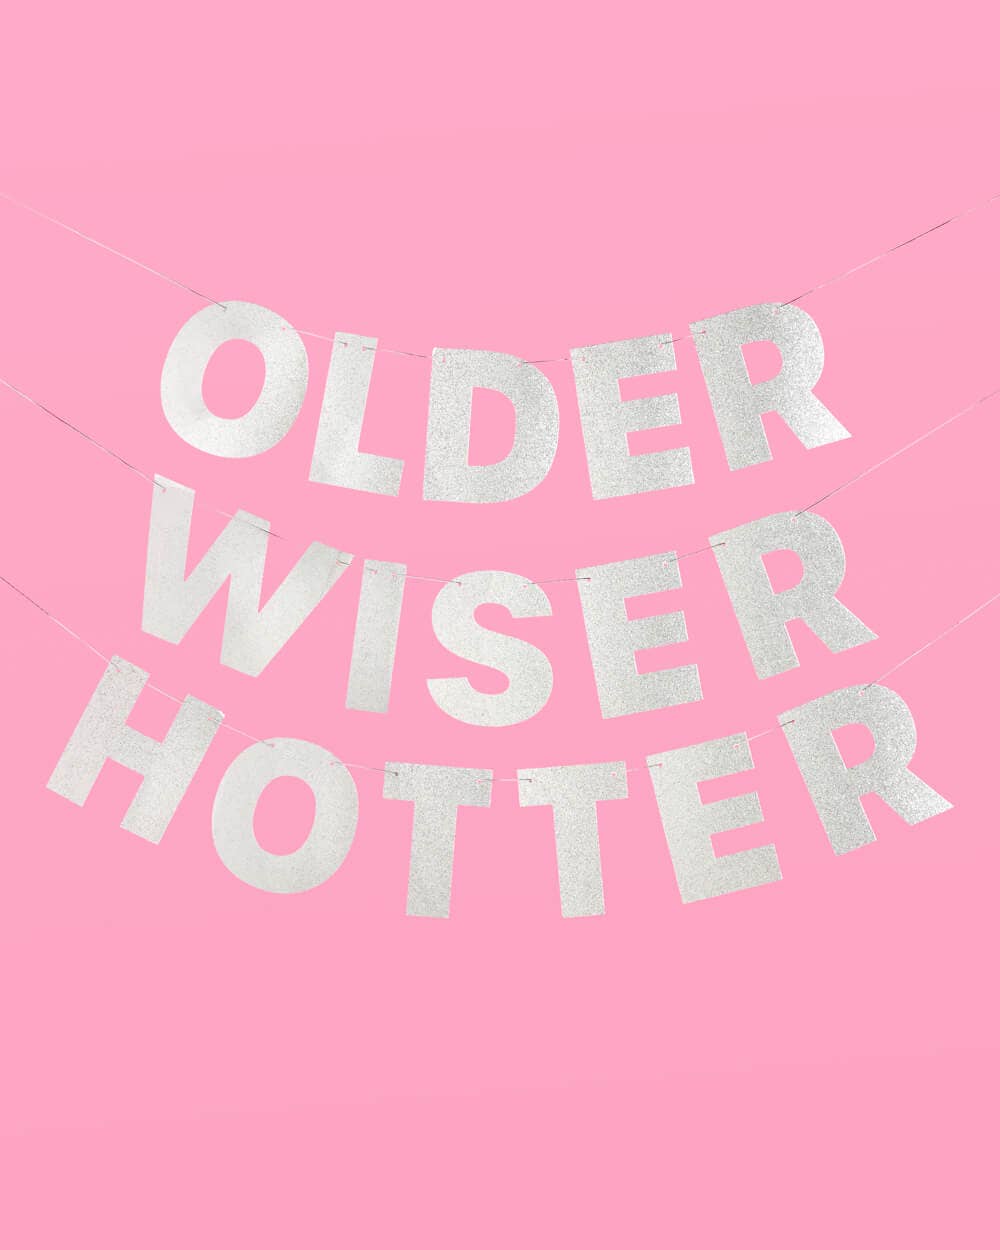 Older Wiser Hotter Banner